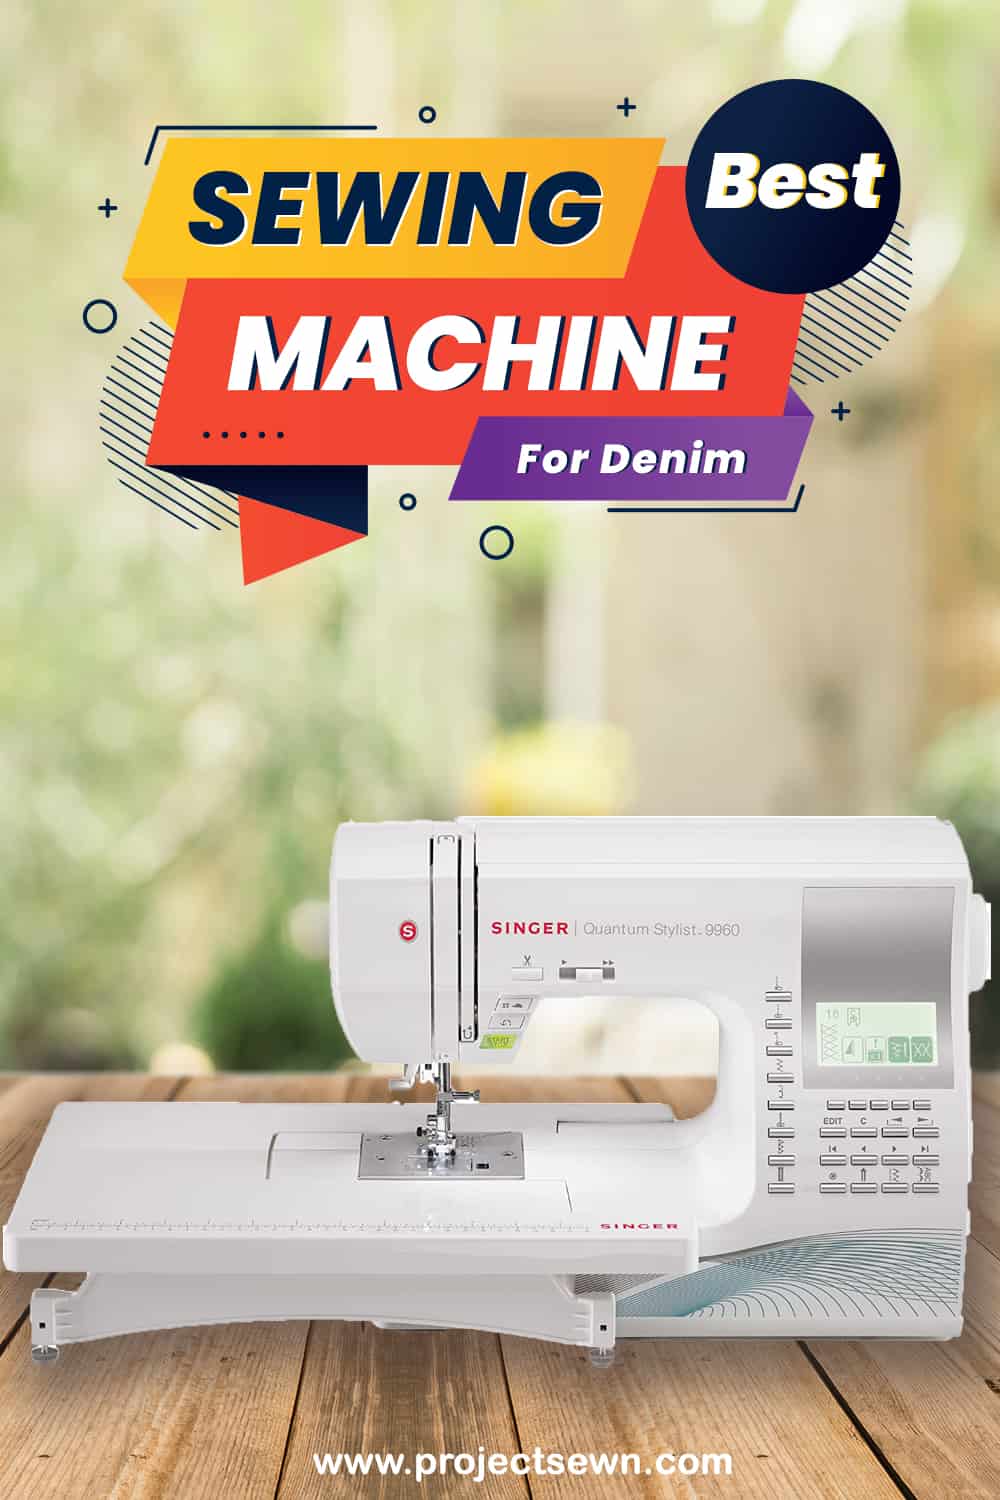 Best Sewing Machine for Denim